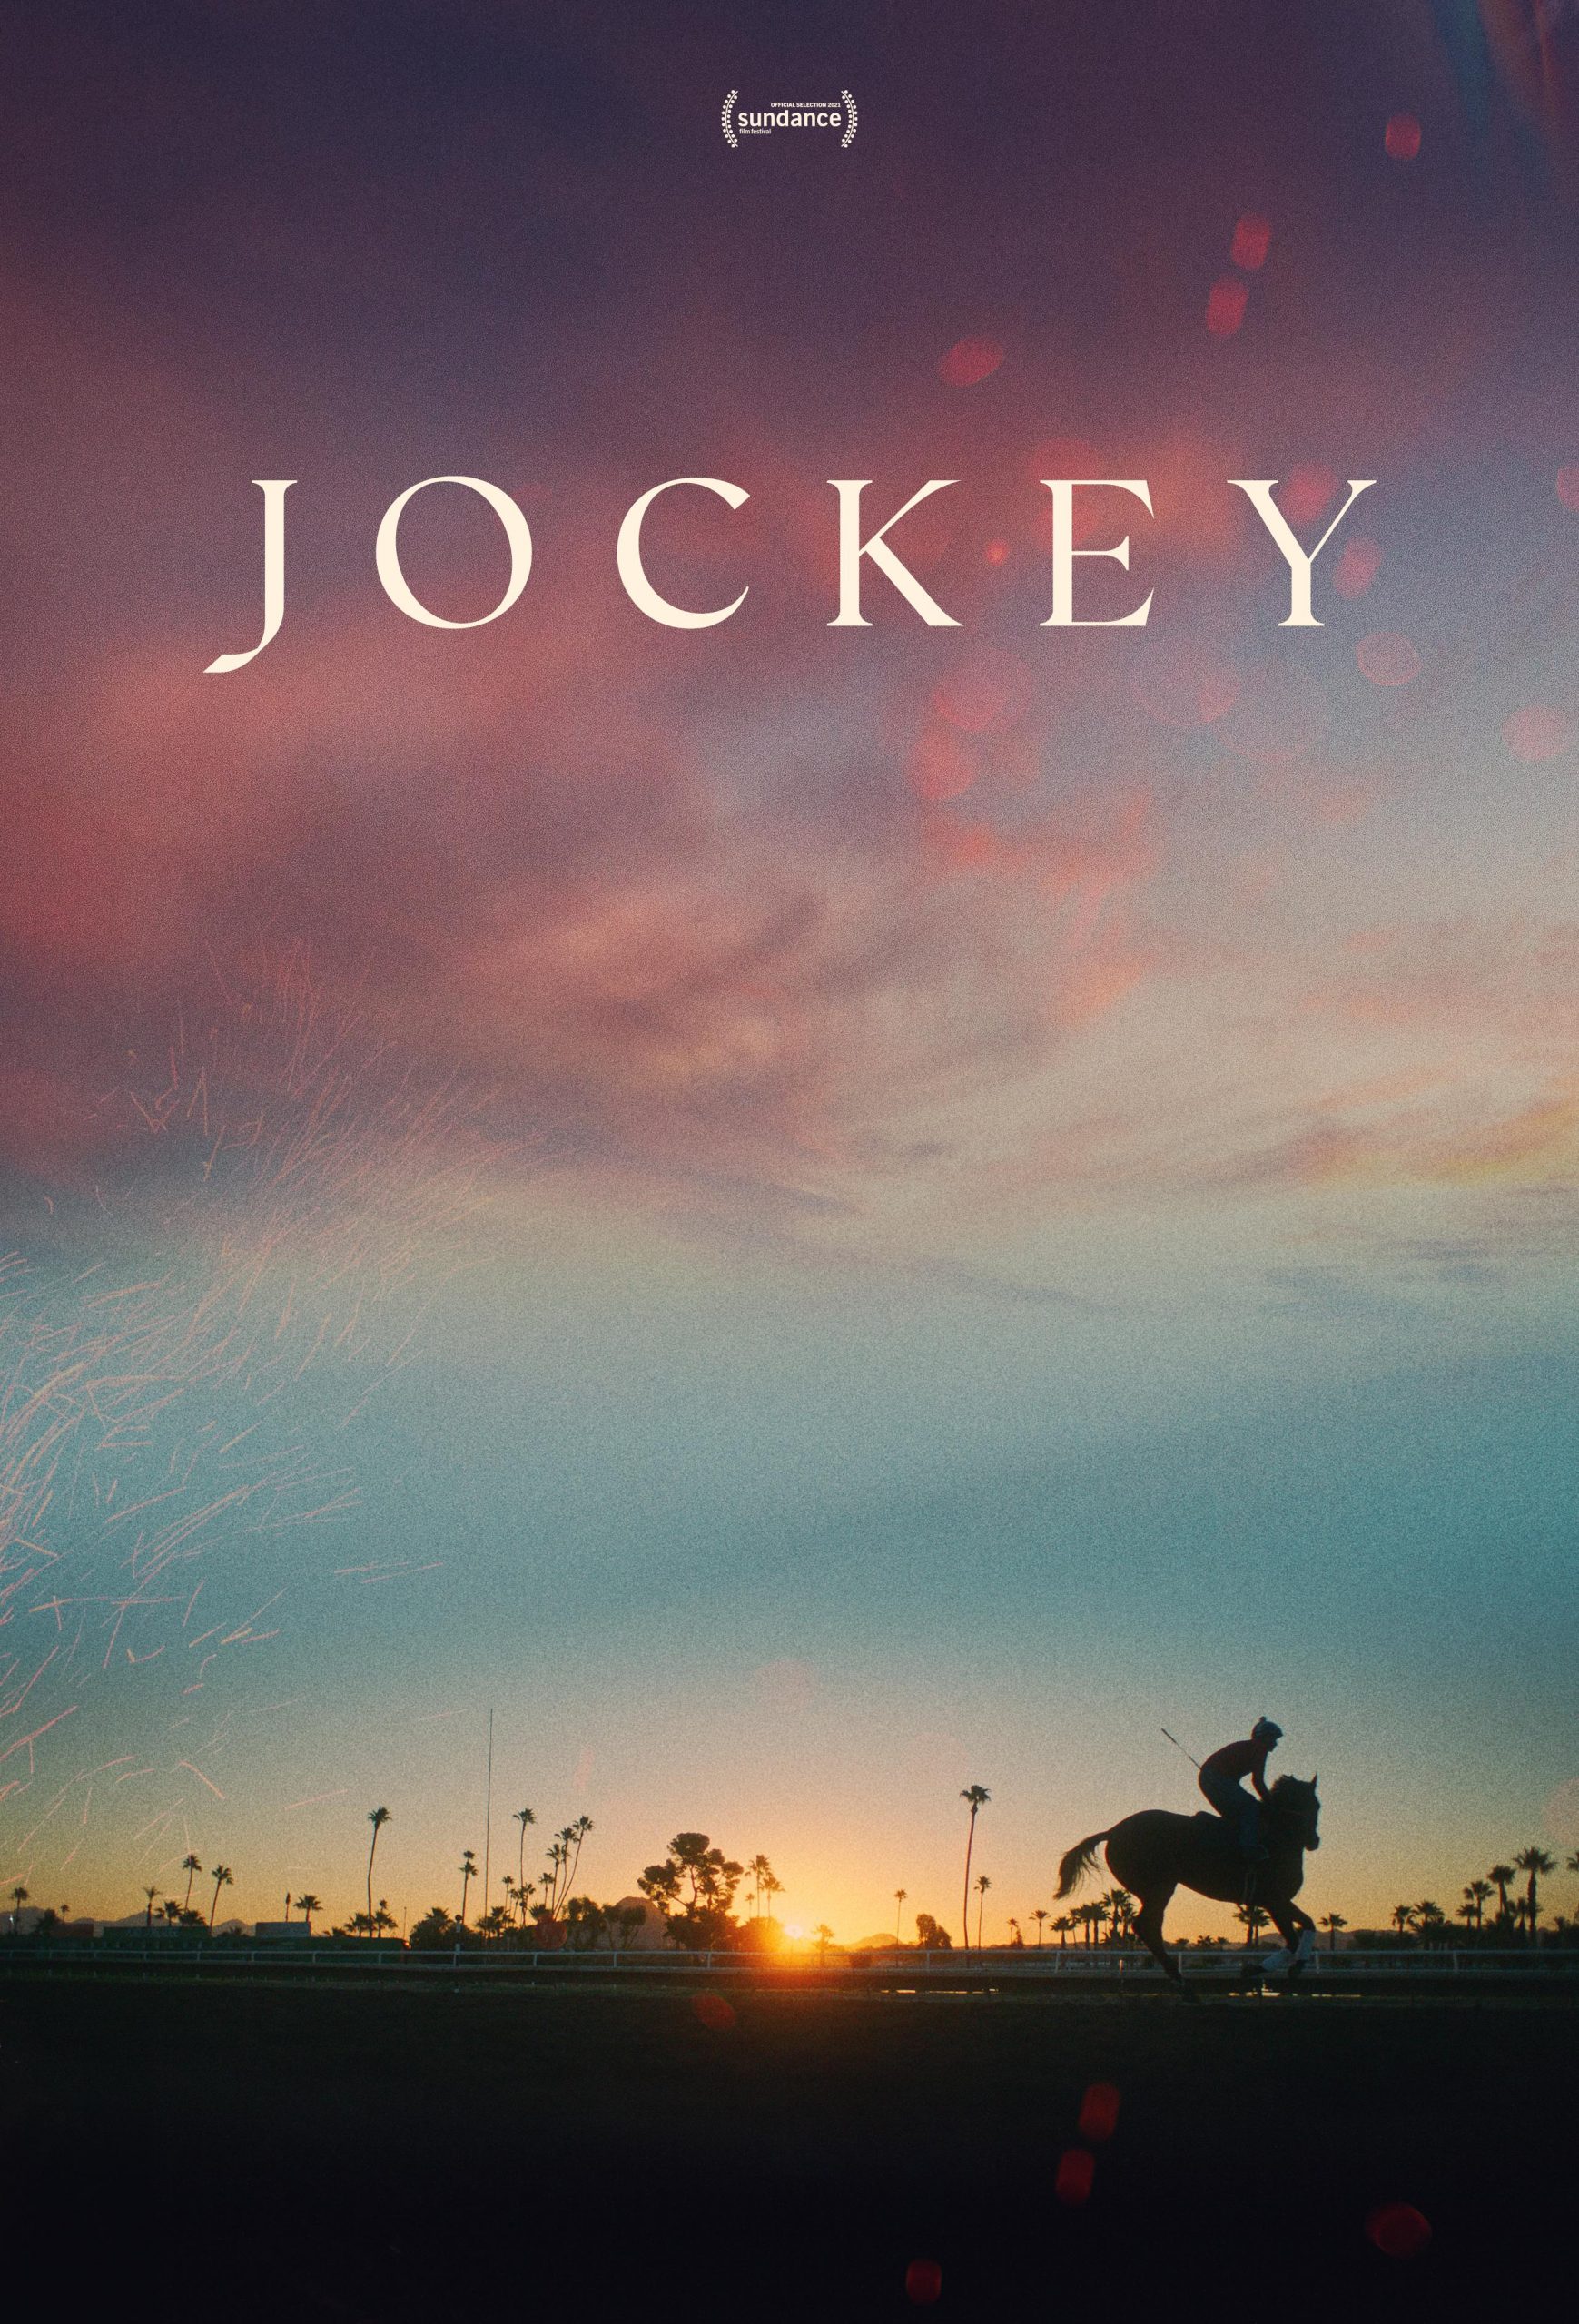 فیلم جوکی ۲۰۲۱ Jockey scaled